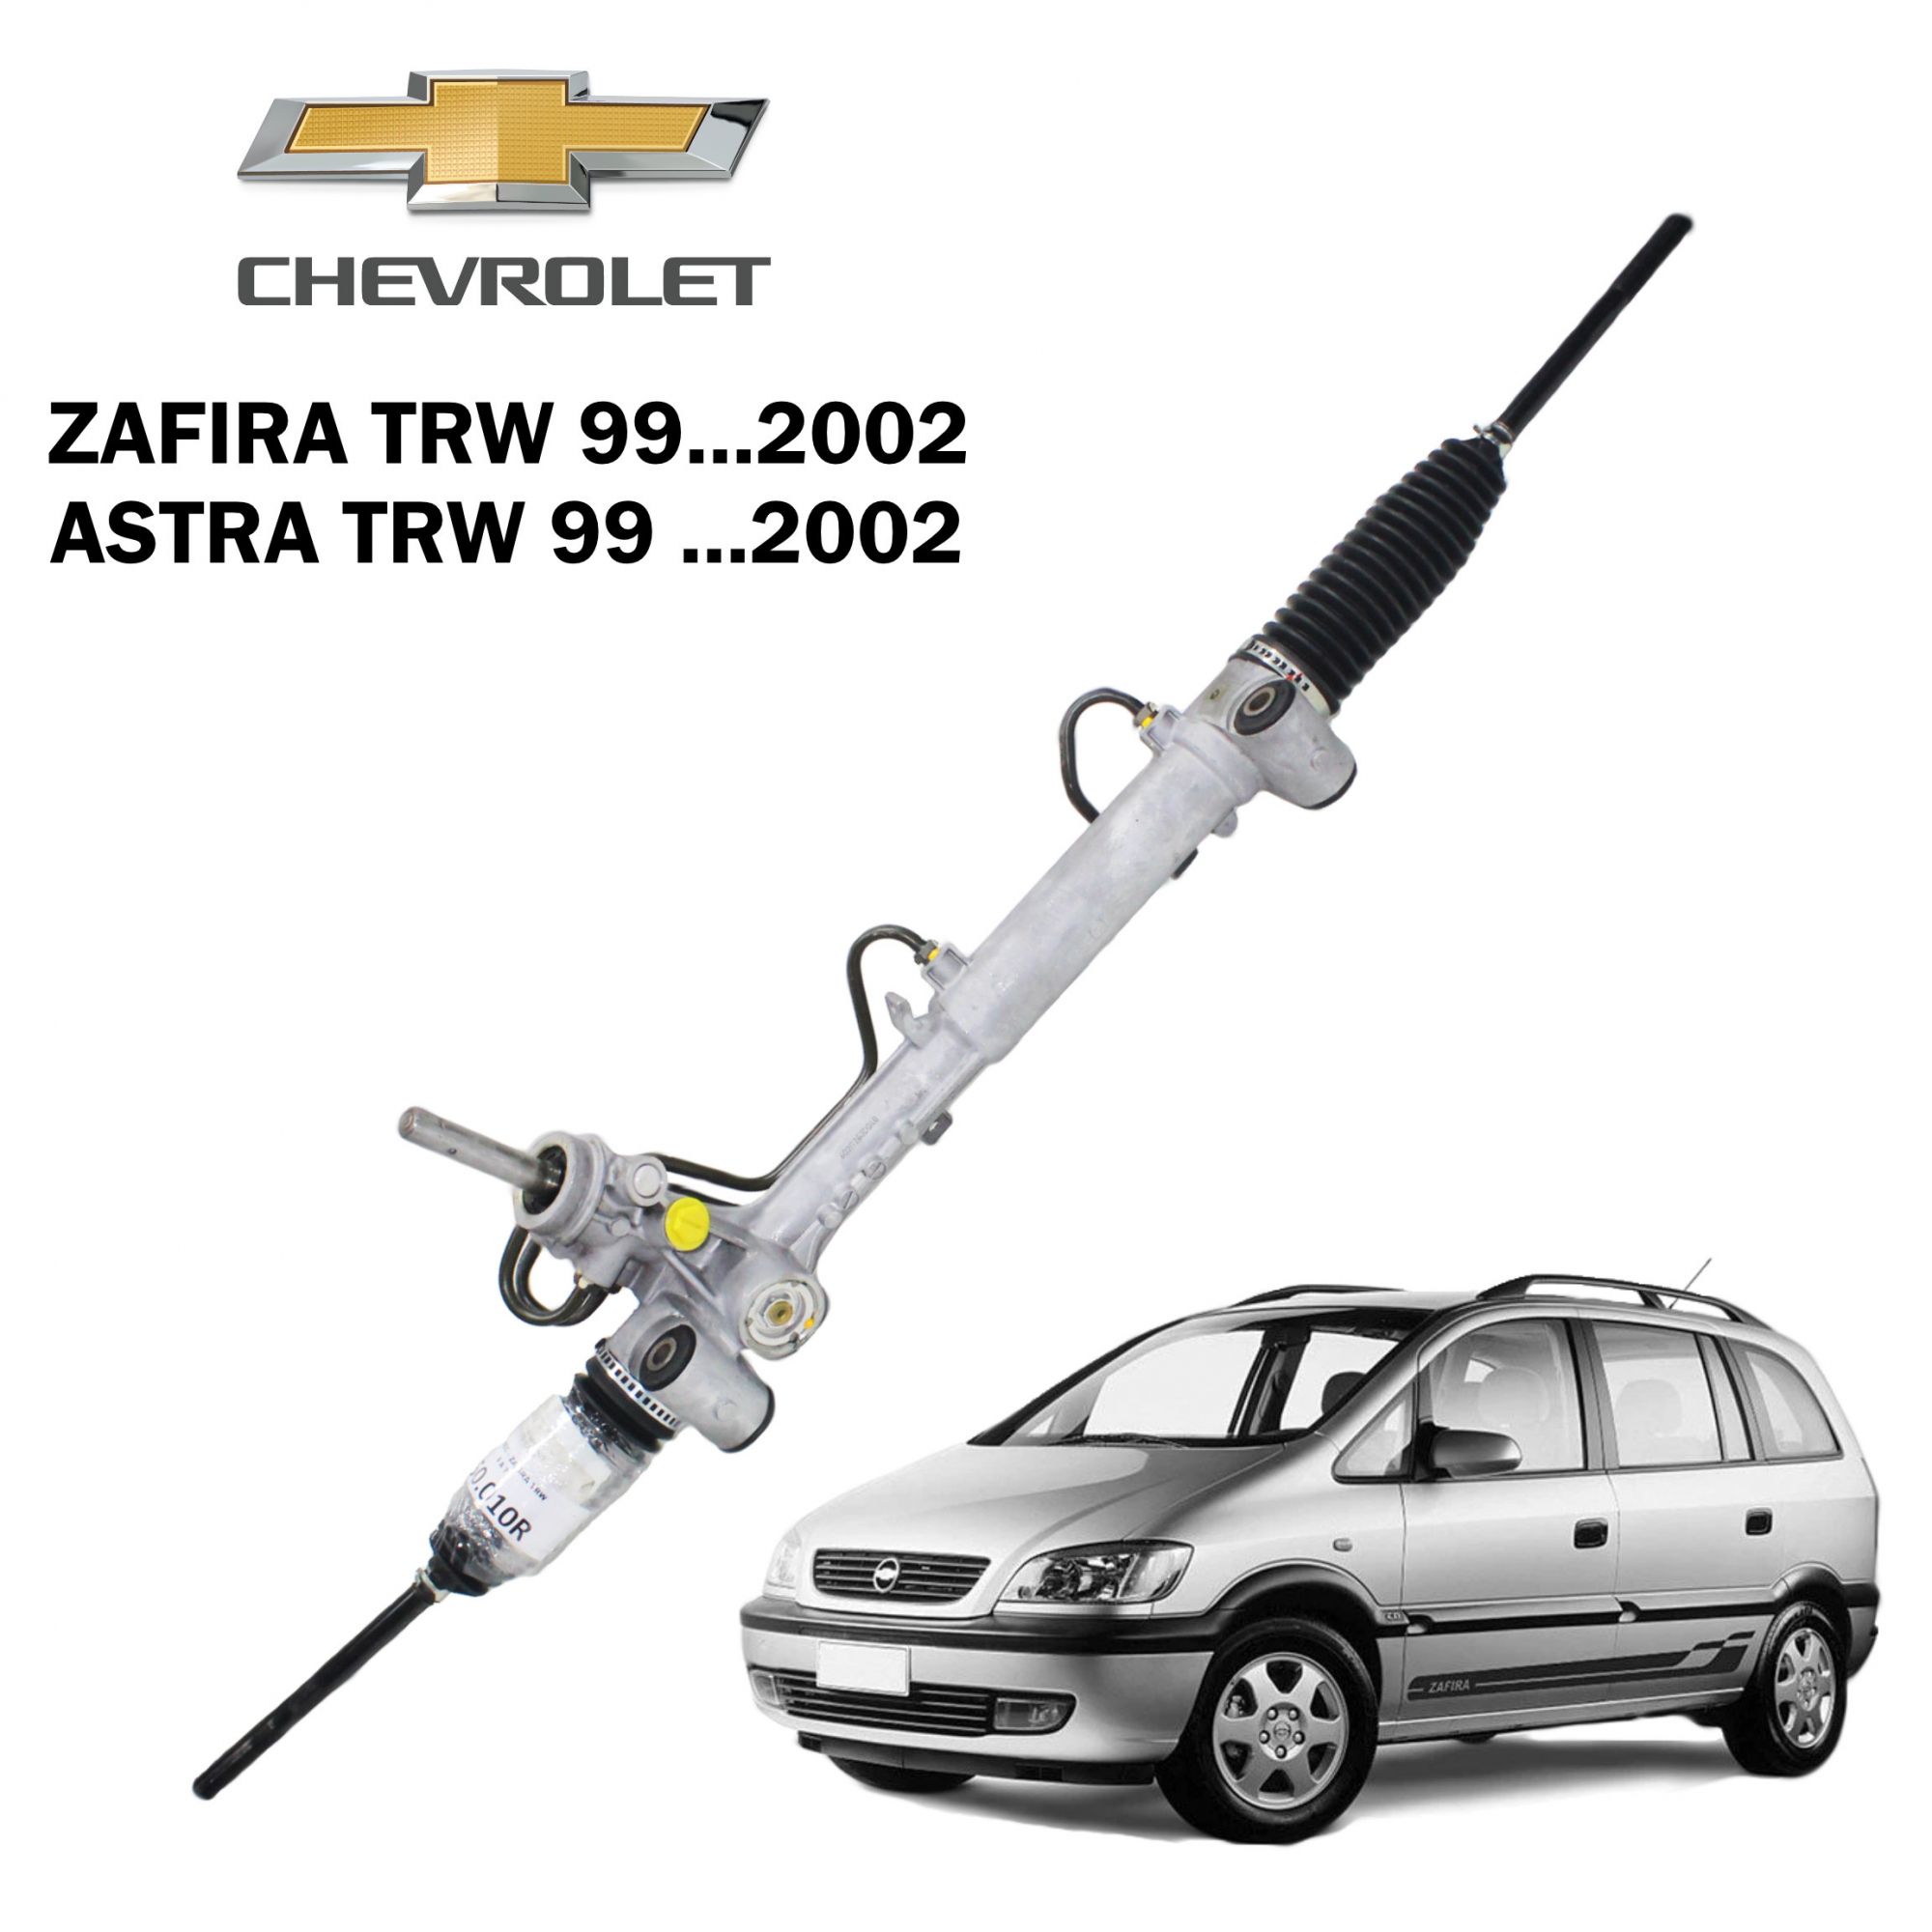 Caixa Direção Hidráulica TRW Zafira 99...02, Astra 99...02